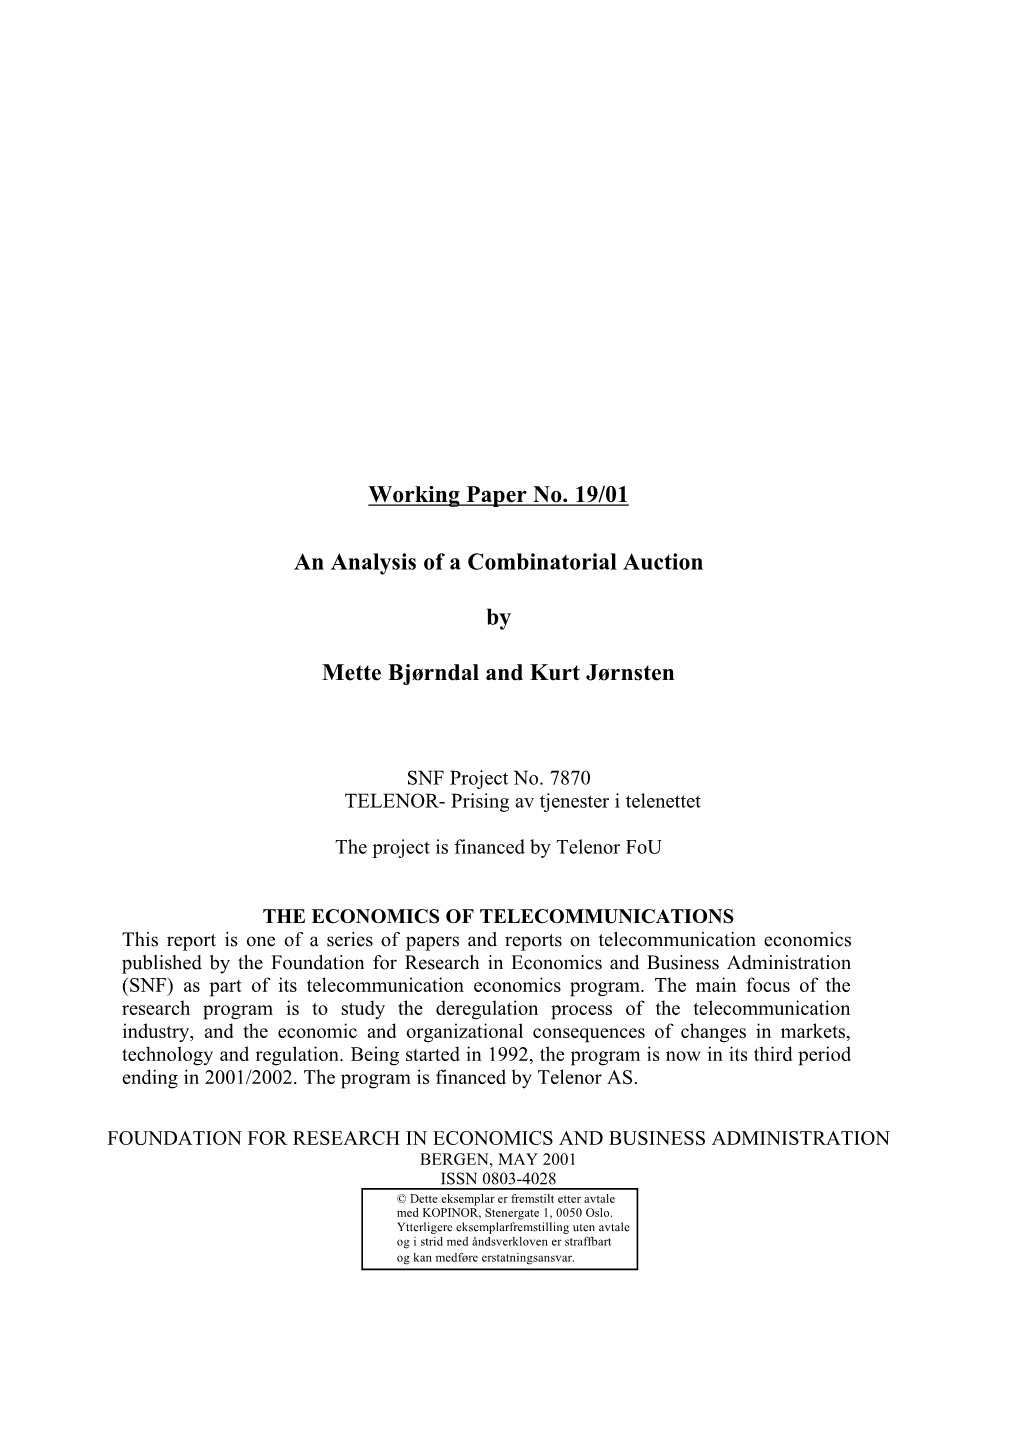 Working Paper No. 19/01 an Analysis of a Combinatorial Auction by Mette Bjørndal and Kurt Jørnsten